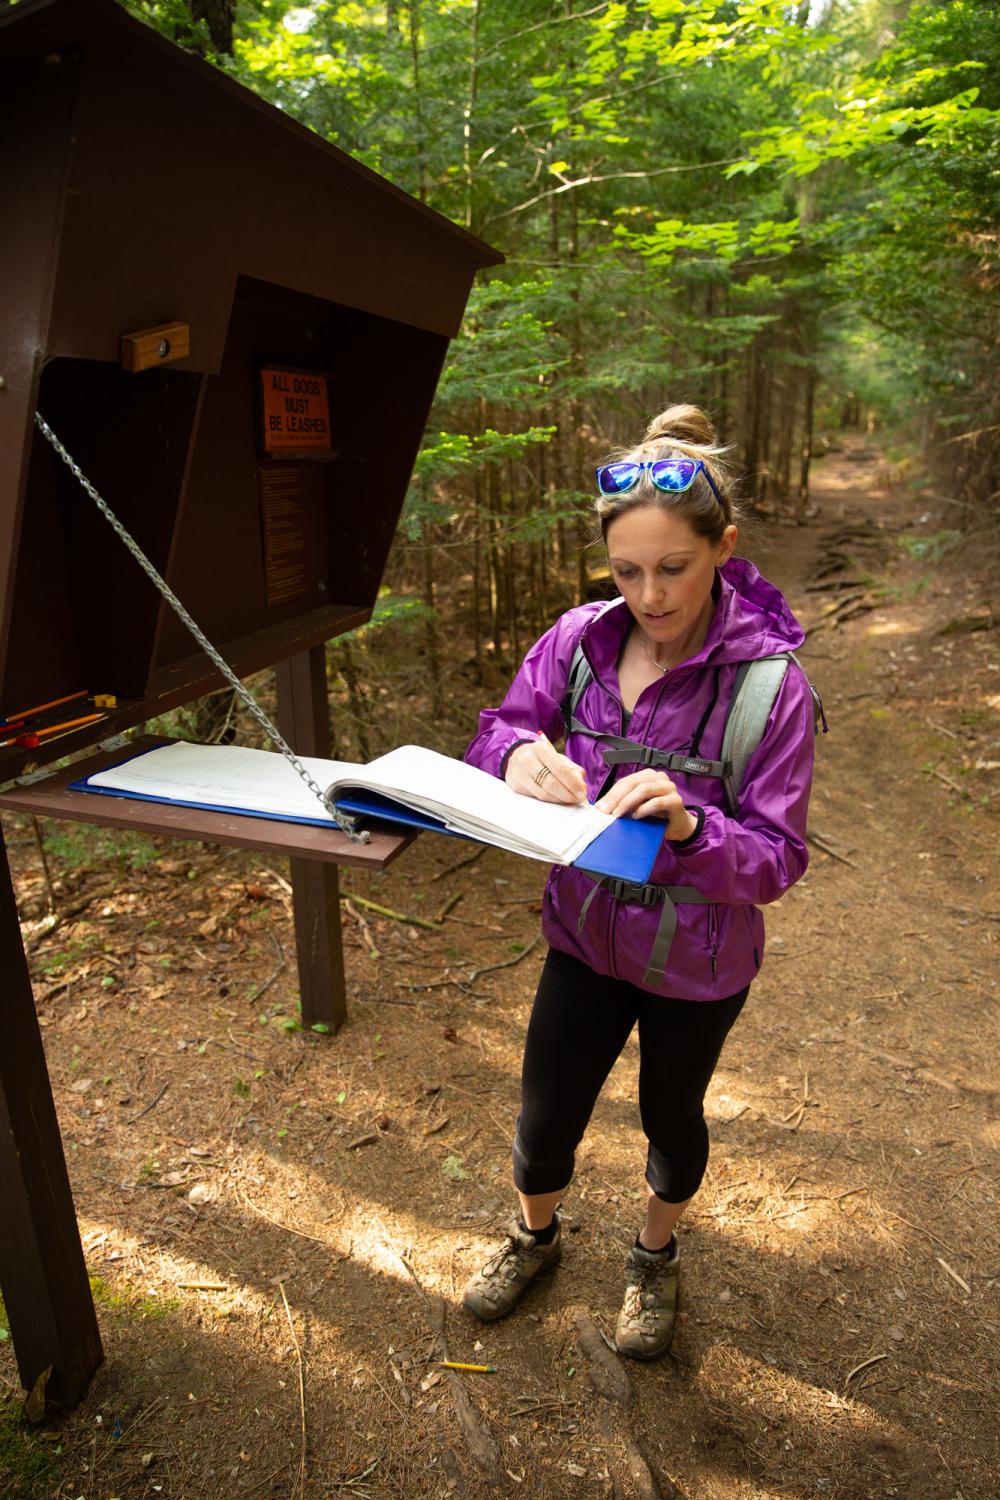 A hiker registers at trailhead